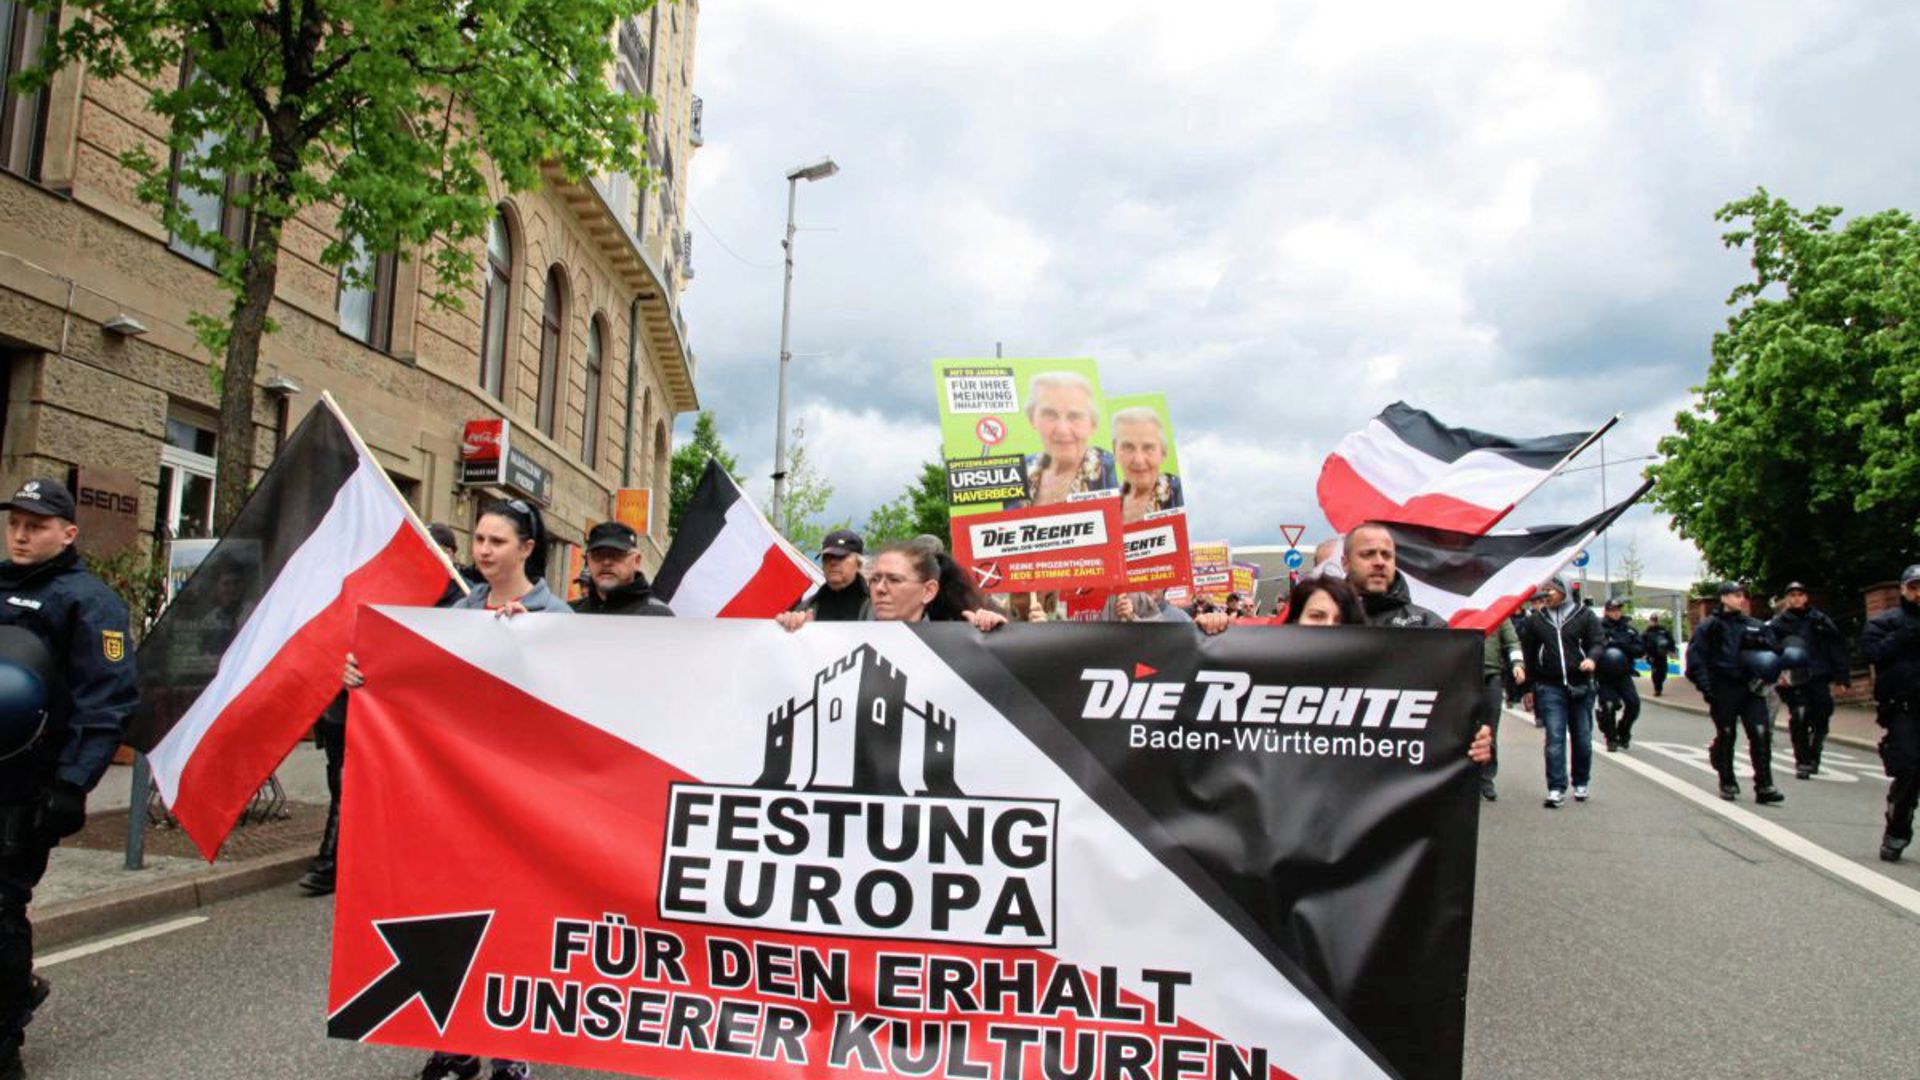 „Die Rechte“ ist neben Karlsruhe auch in Pforzheim aktiv – hier bei einer Demonstration zur Europawahl am 11. Mai. Auf den Plakaten im Hintergrund ist die Holocaust-Leugnerin und Spitzenkandidatin Ursula Haverbeck zu sehen.